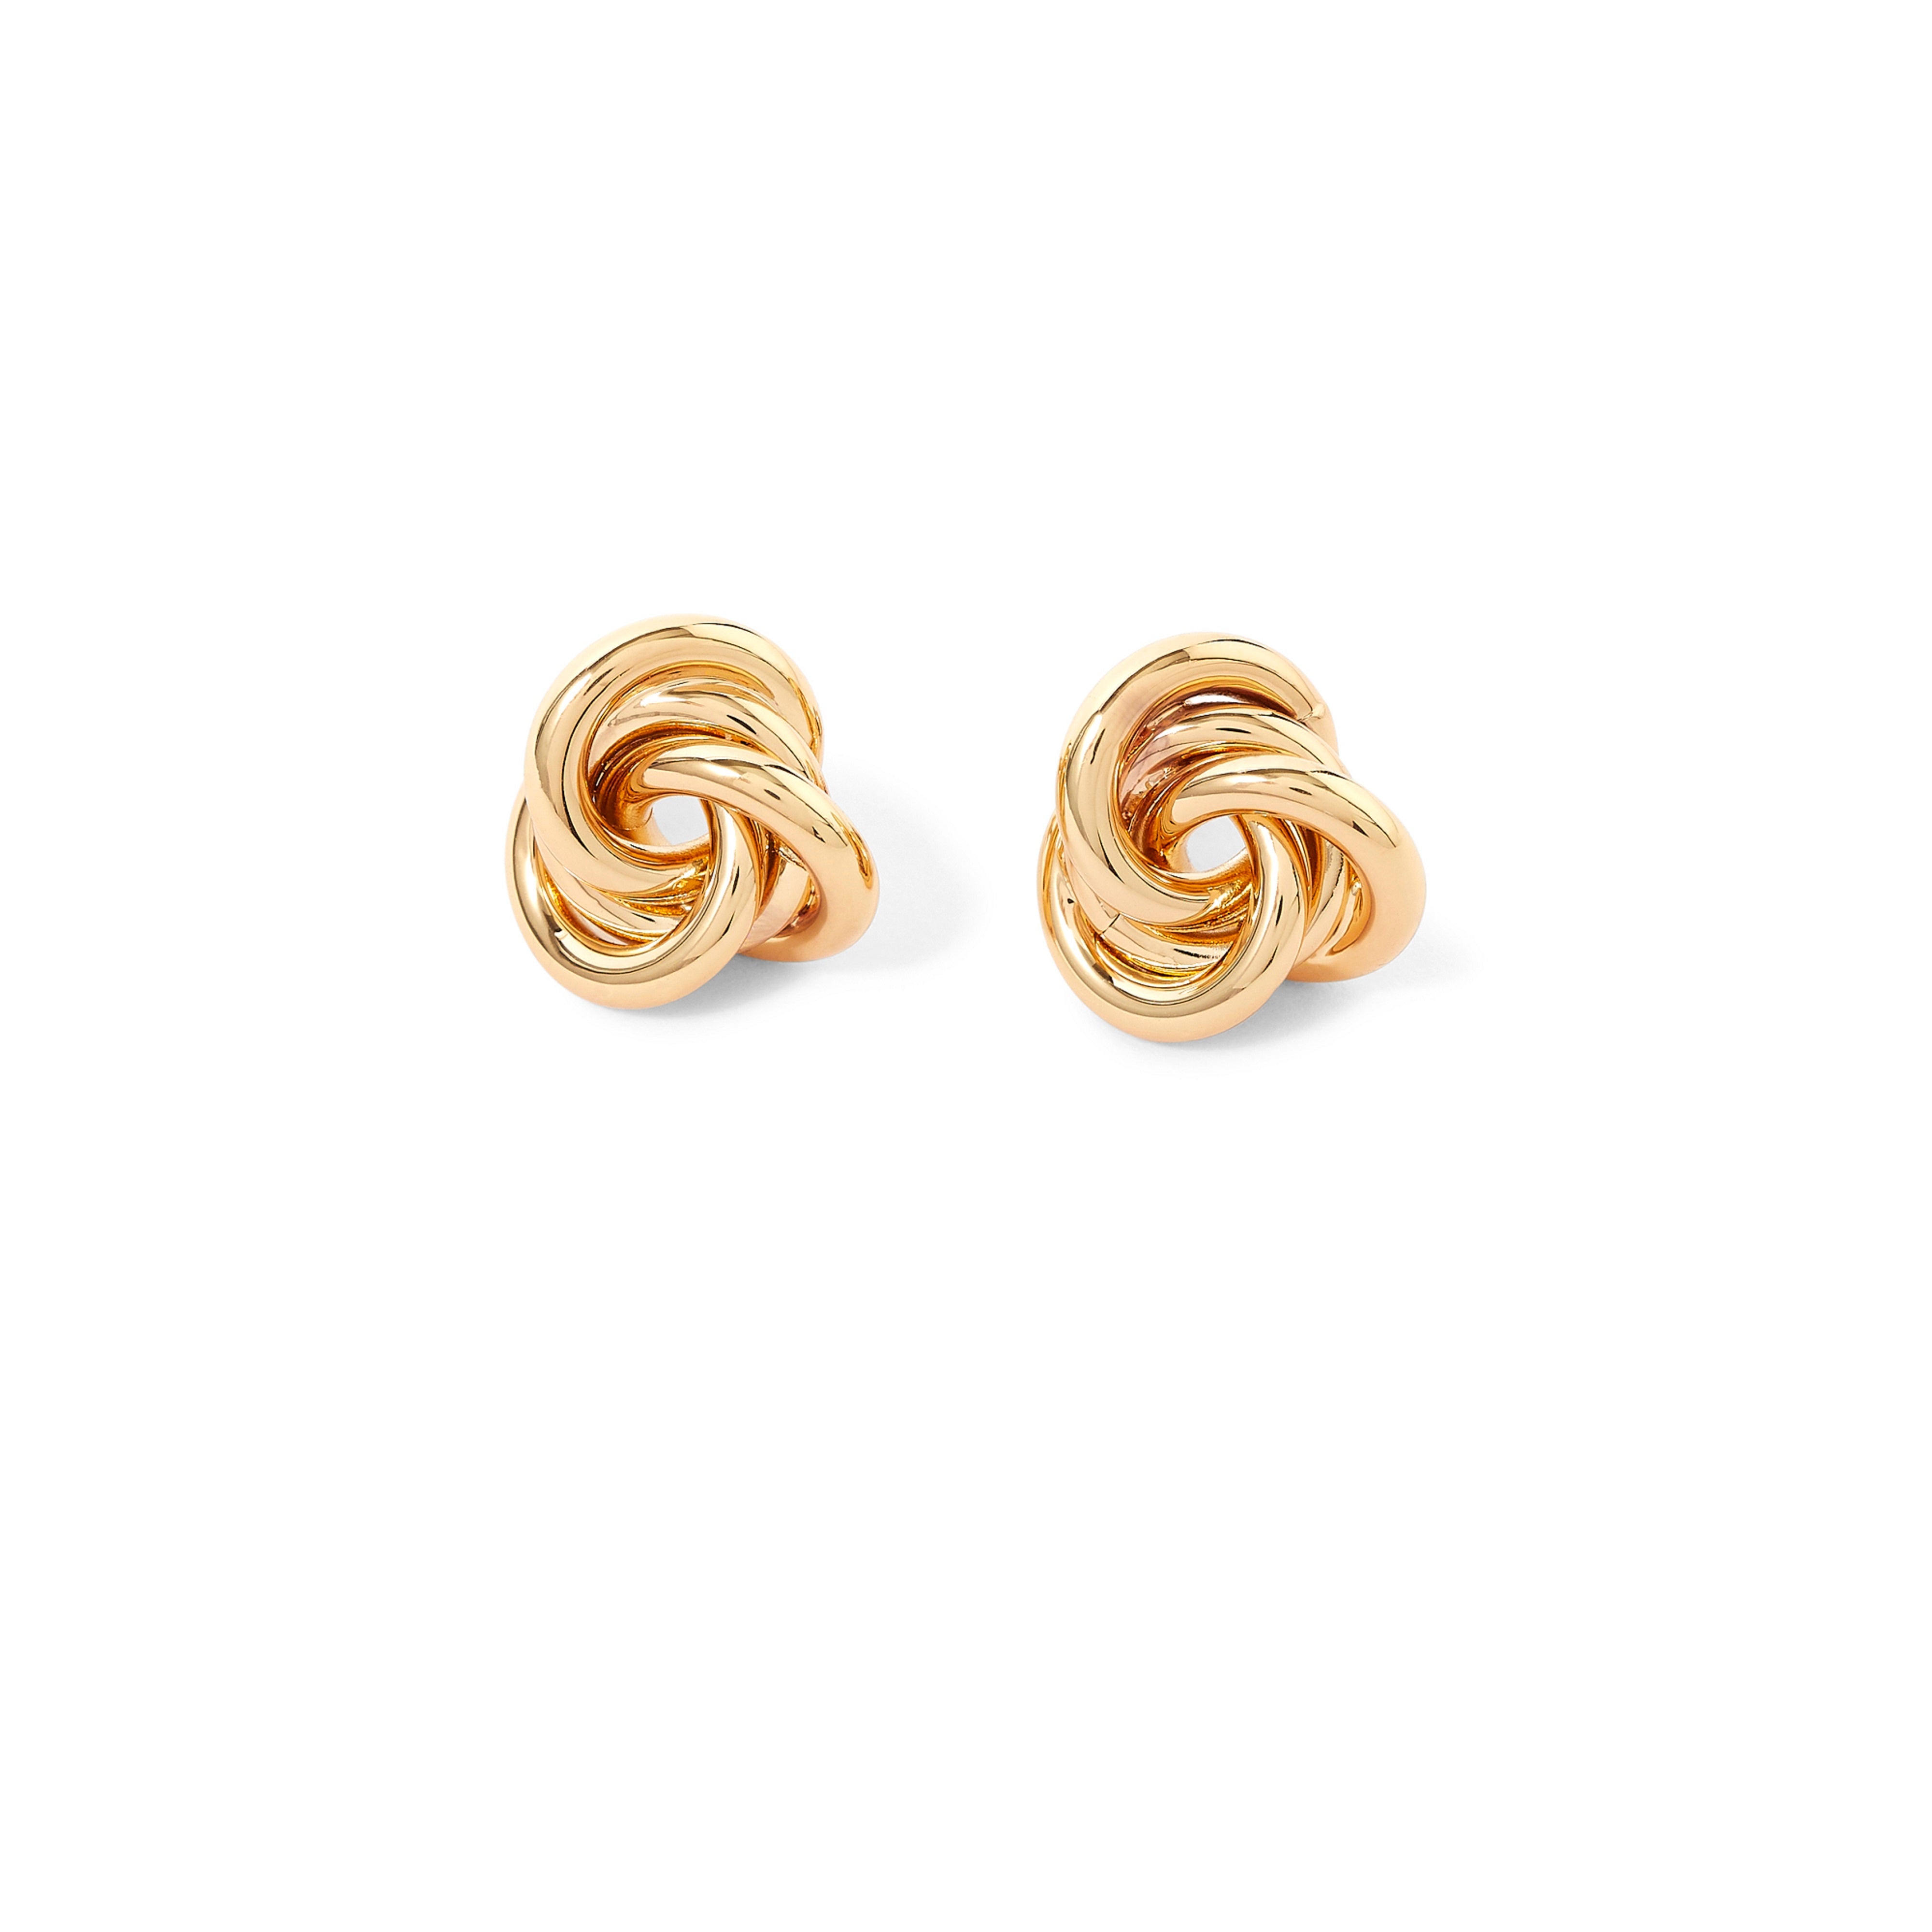 Accessorize London Women's Gold Knot Stud Earring